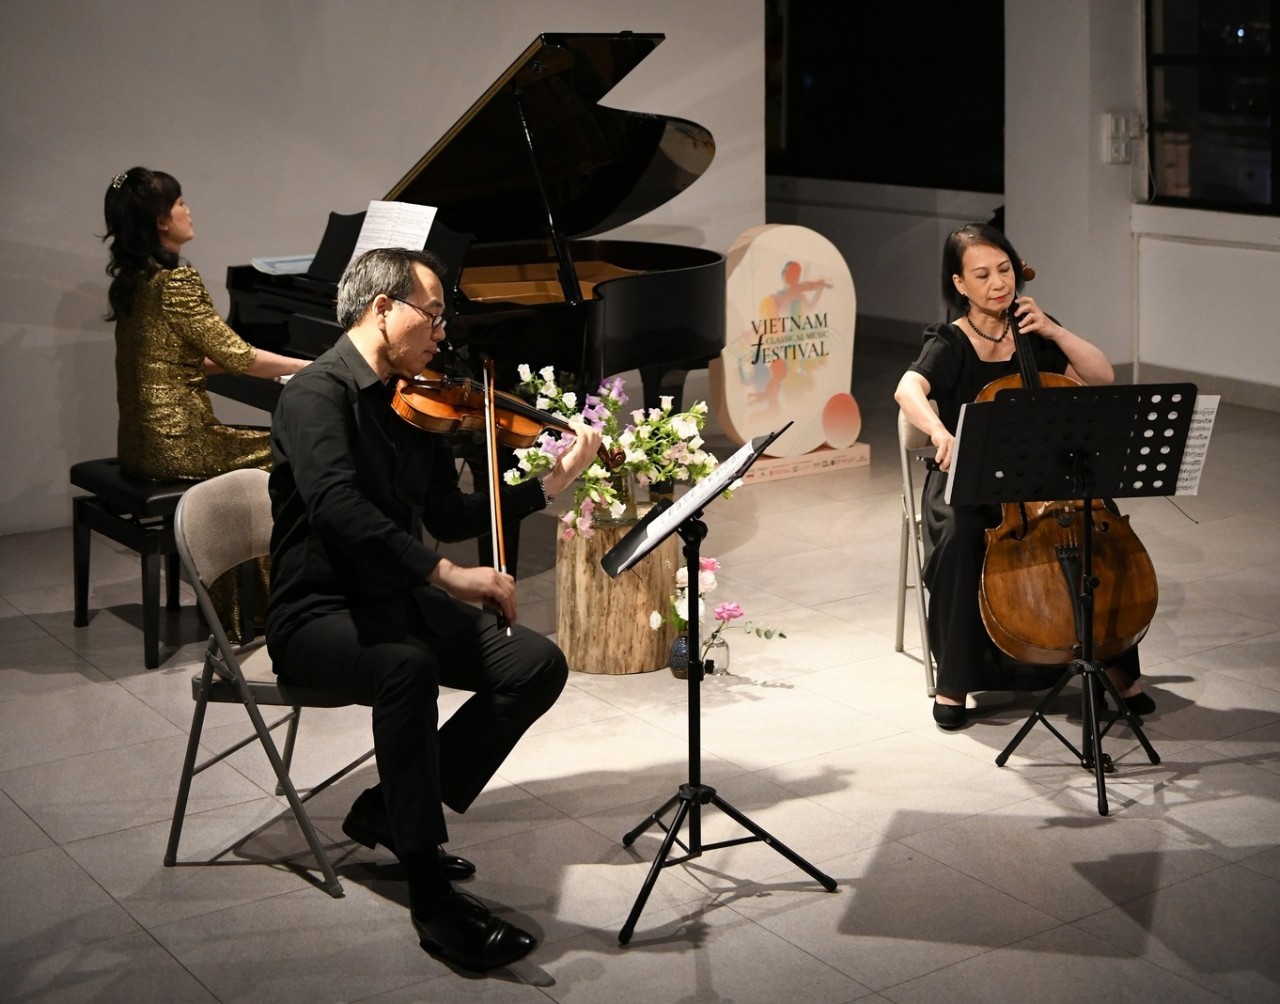 The Sông Hồng Ensemble will perform on March 11 and feature Vietnamese popular trio violinist Phạm Trường Sơn, cellist Đào Tuyết Trinh and pianist Phạm Quỳnh Trang.